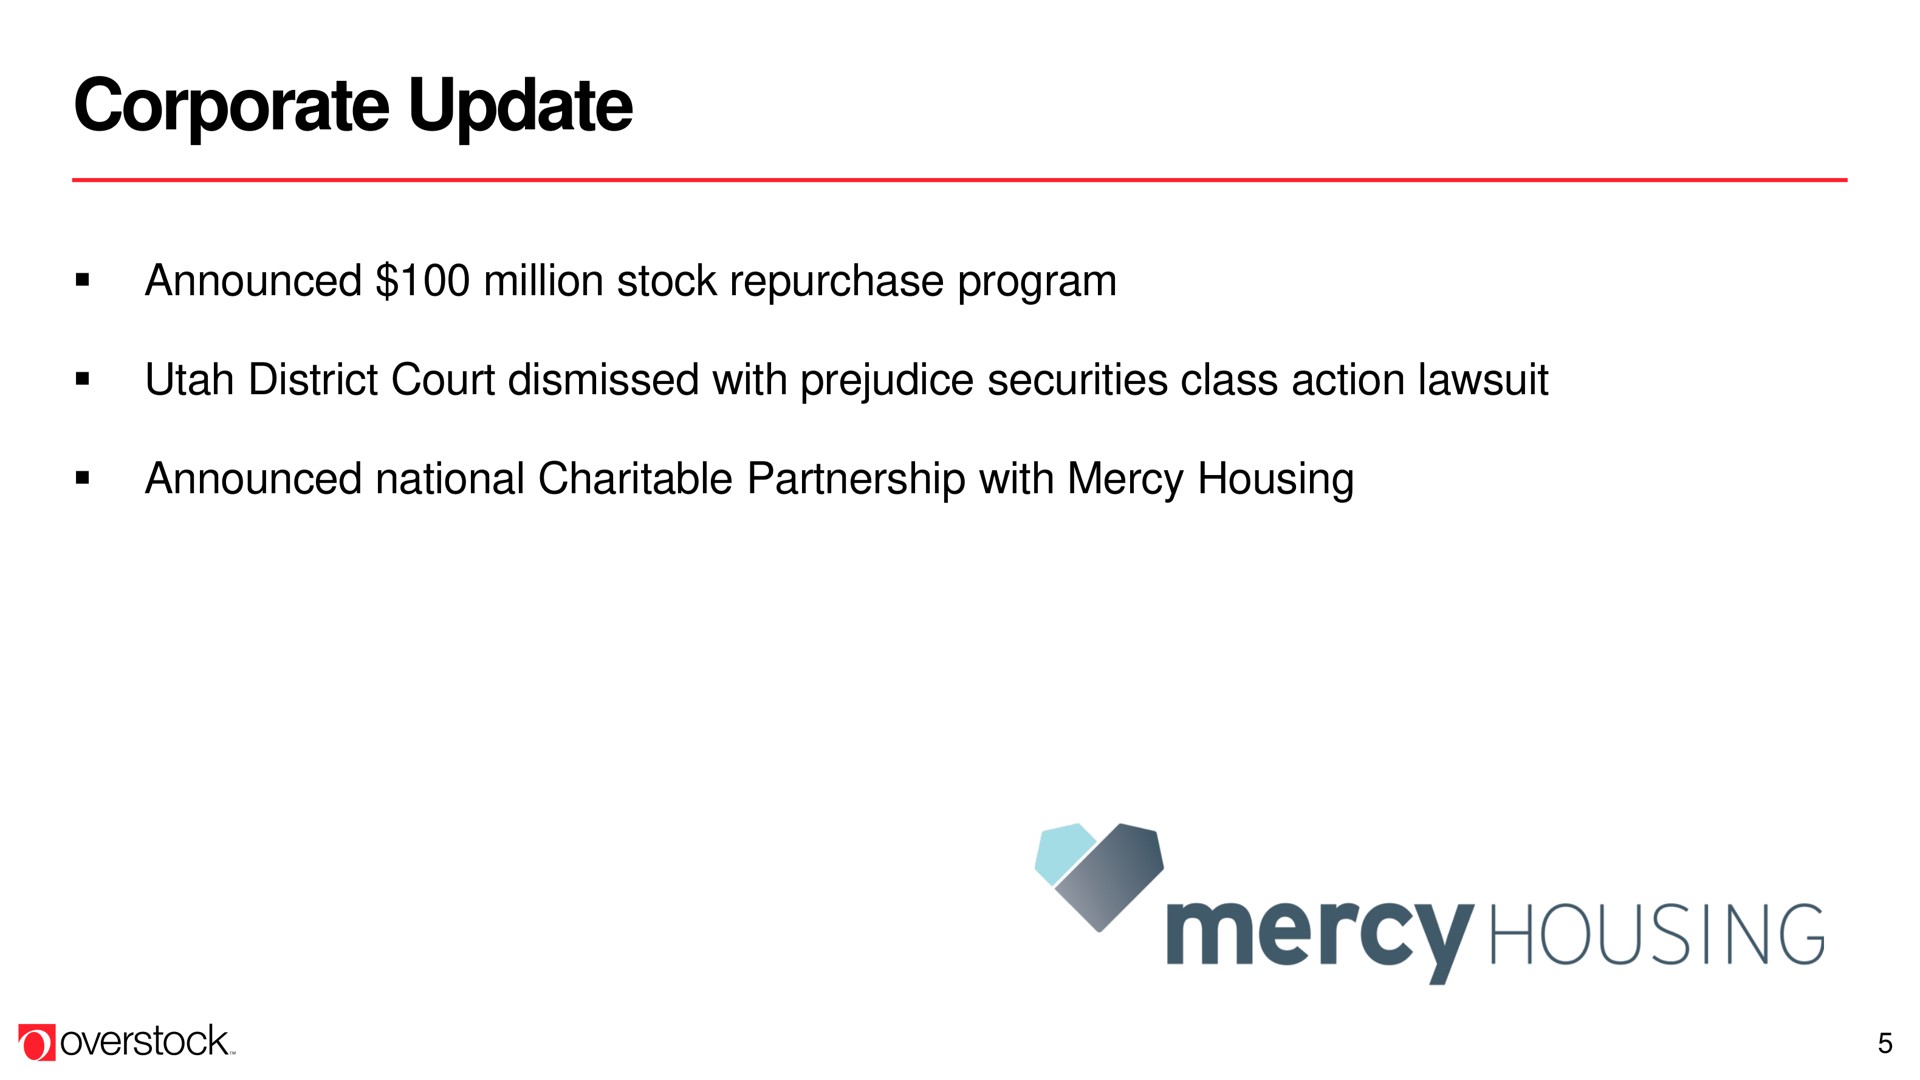 corporate update mercy housing | Overstock